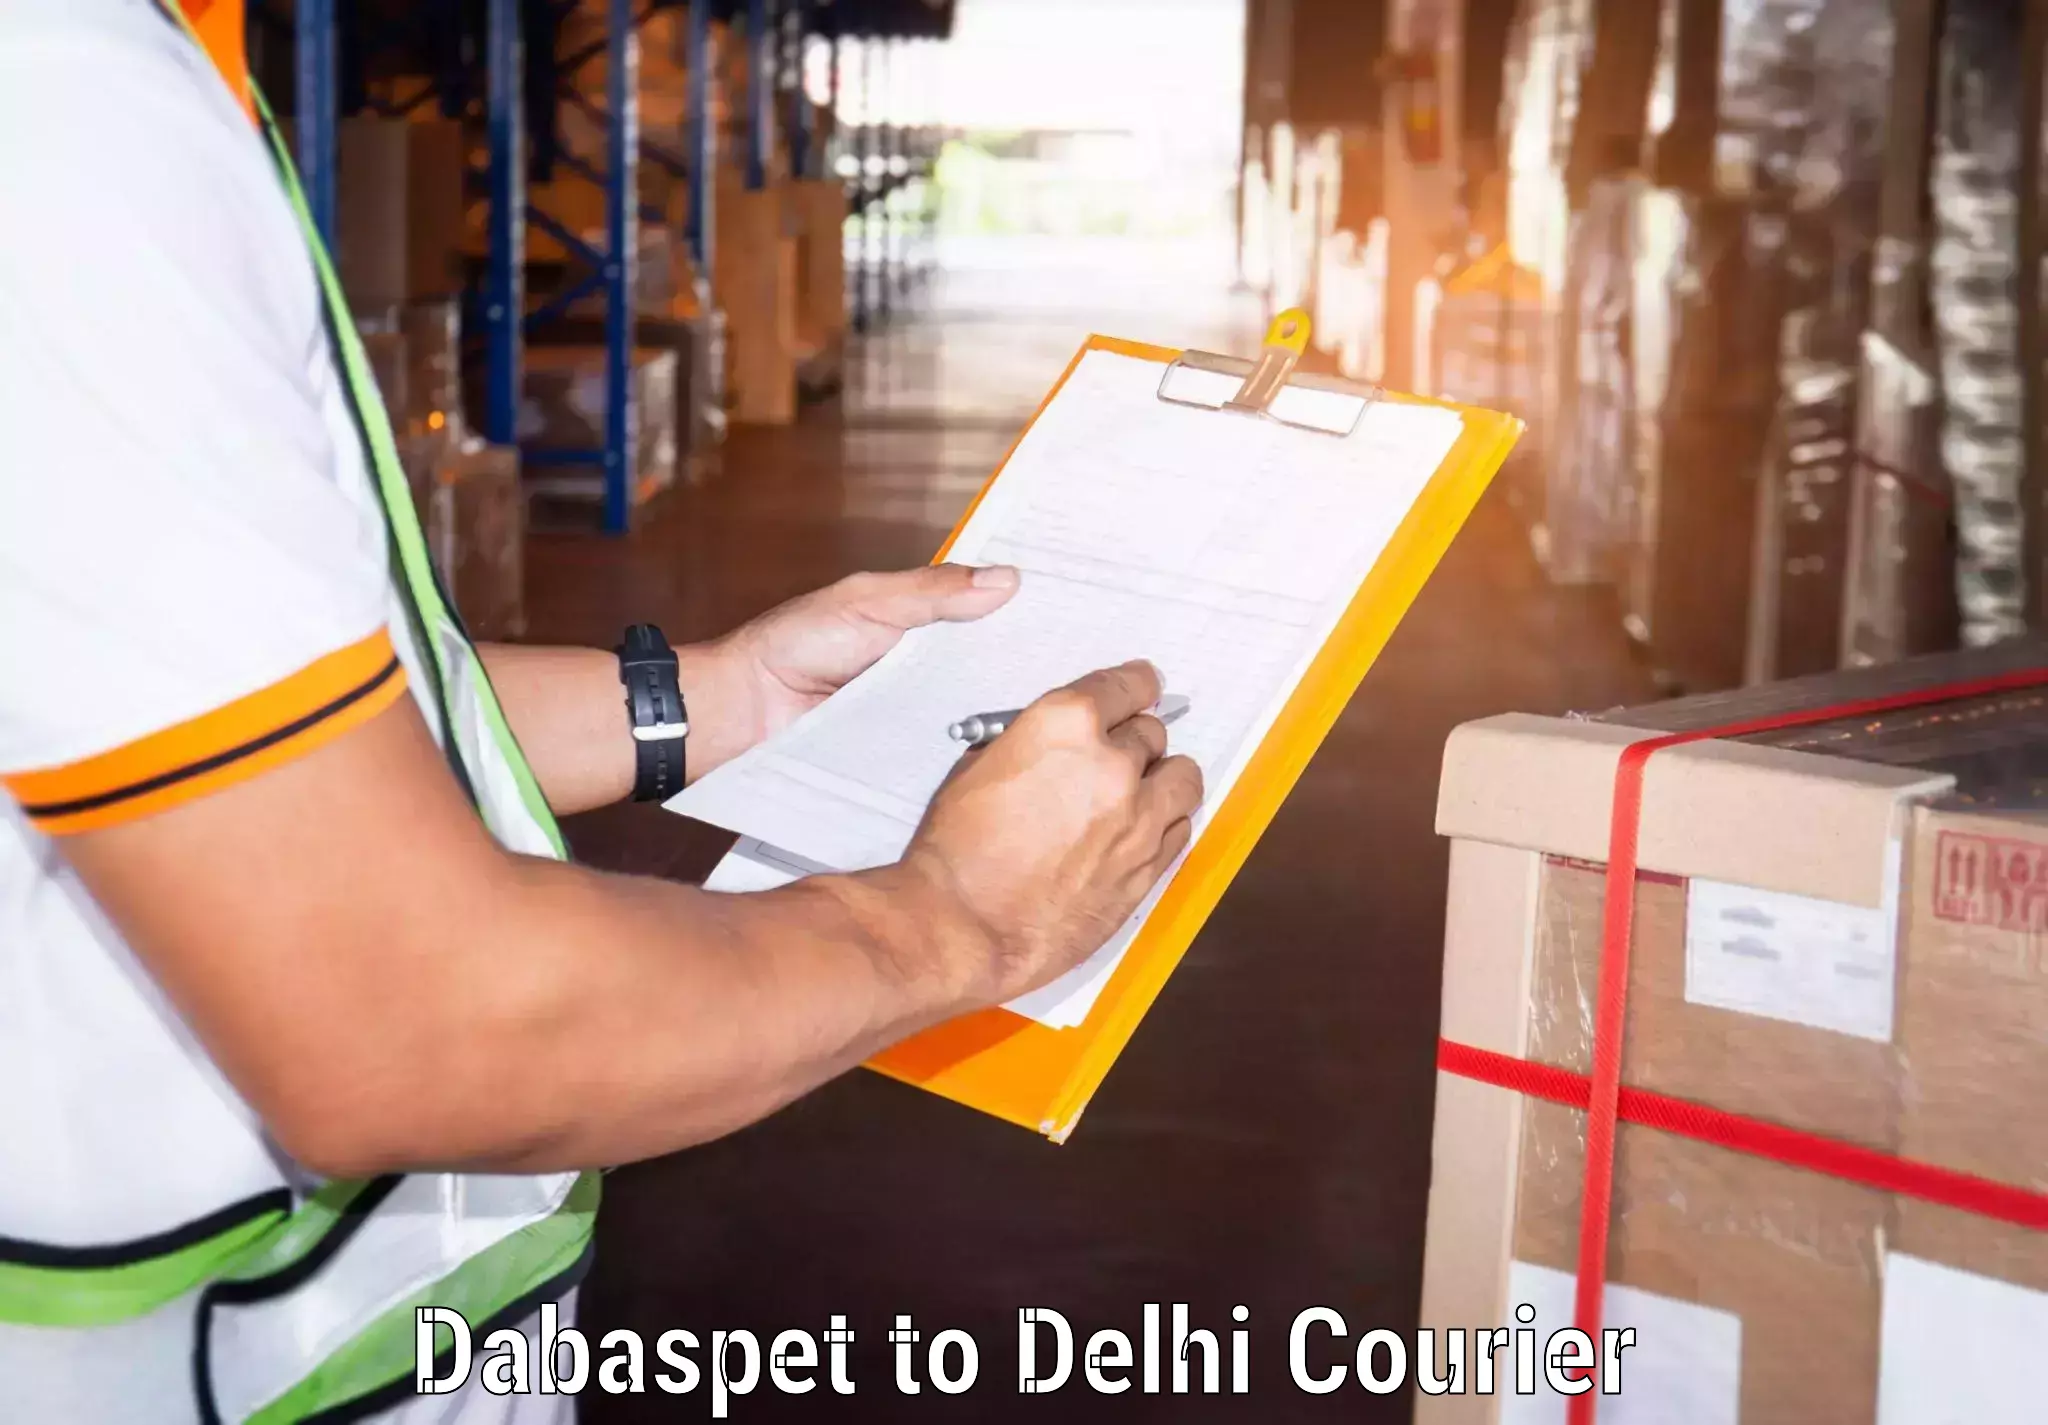 24/7 courier service Dabaspet to Delhi